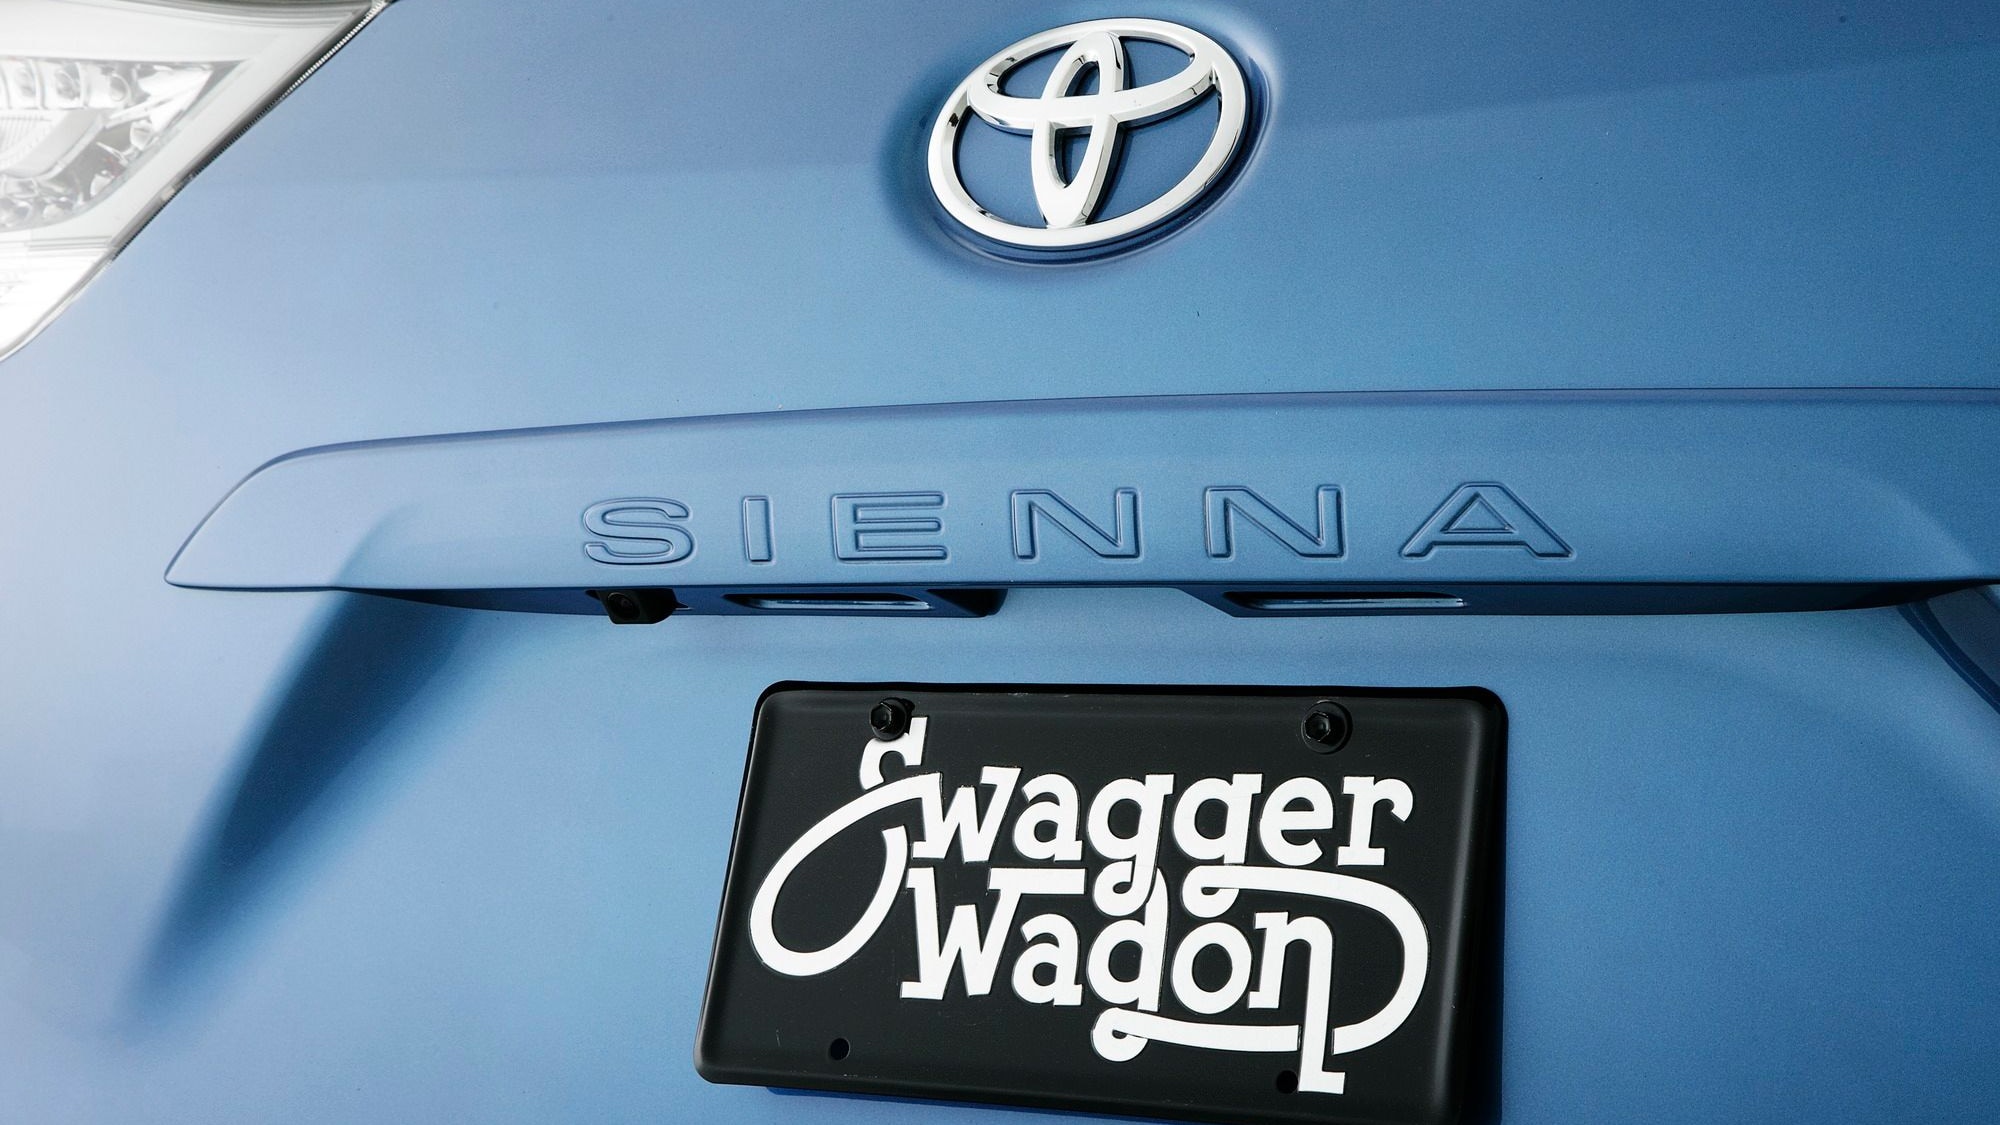 2010 SEMA: Toyota Swagger Wagon Supreme